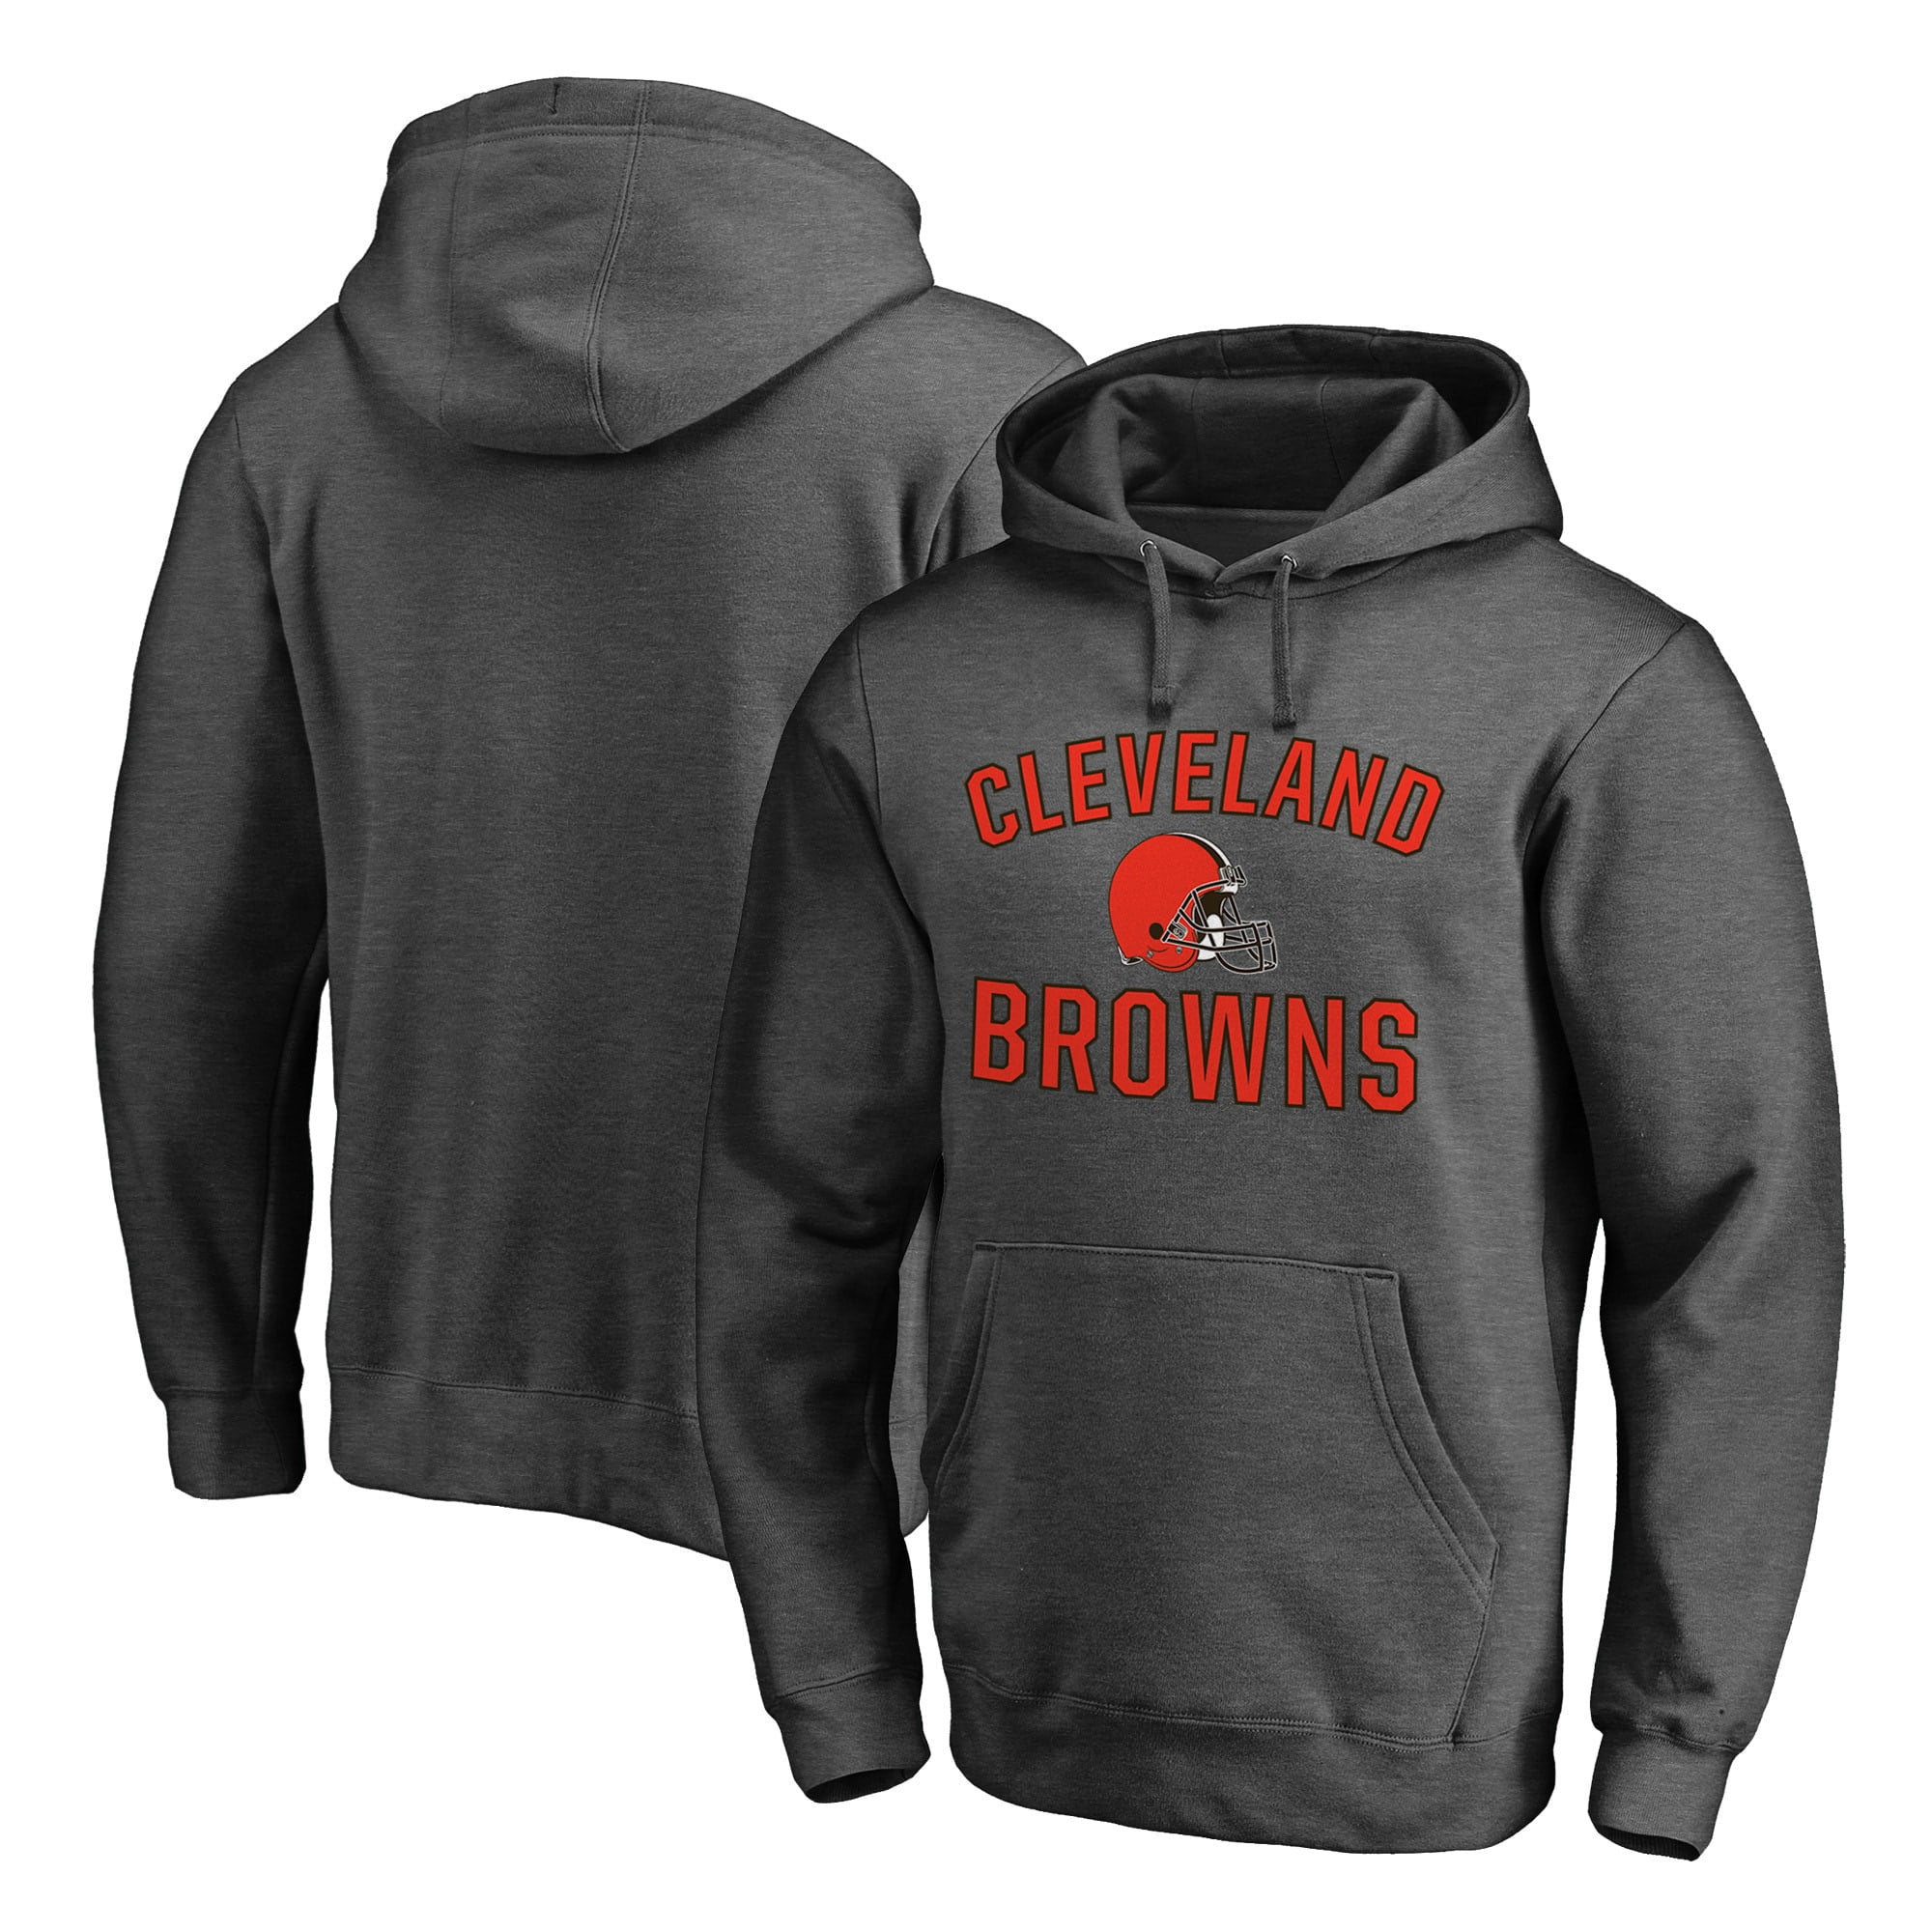 cleveland browns sweatshirt sale